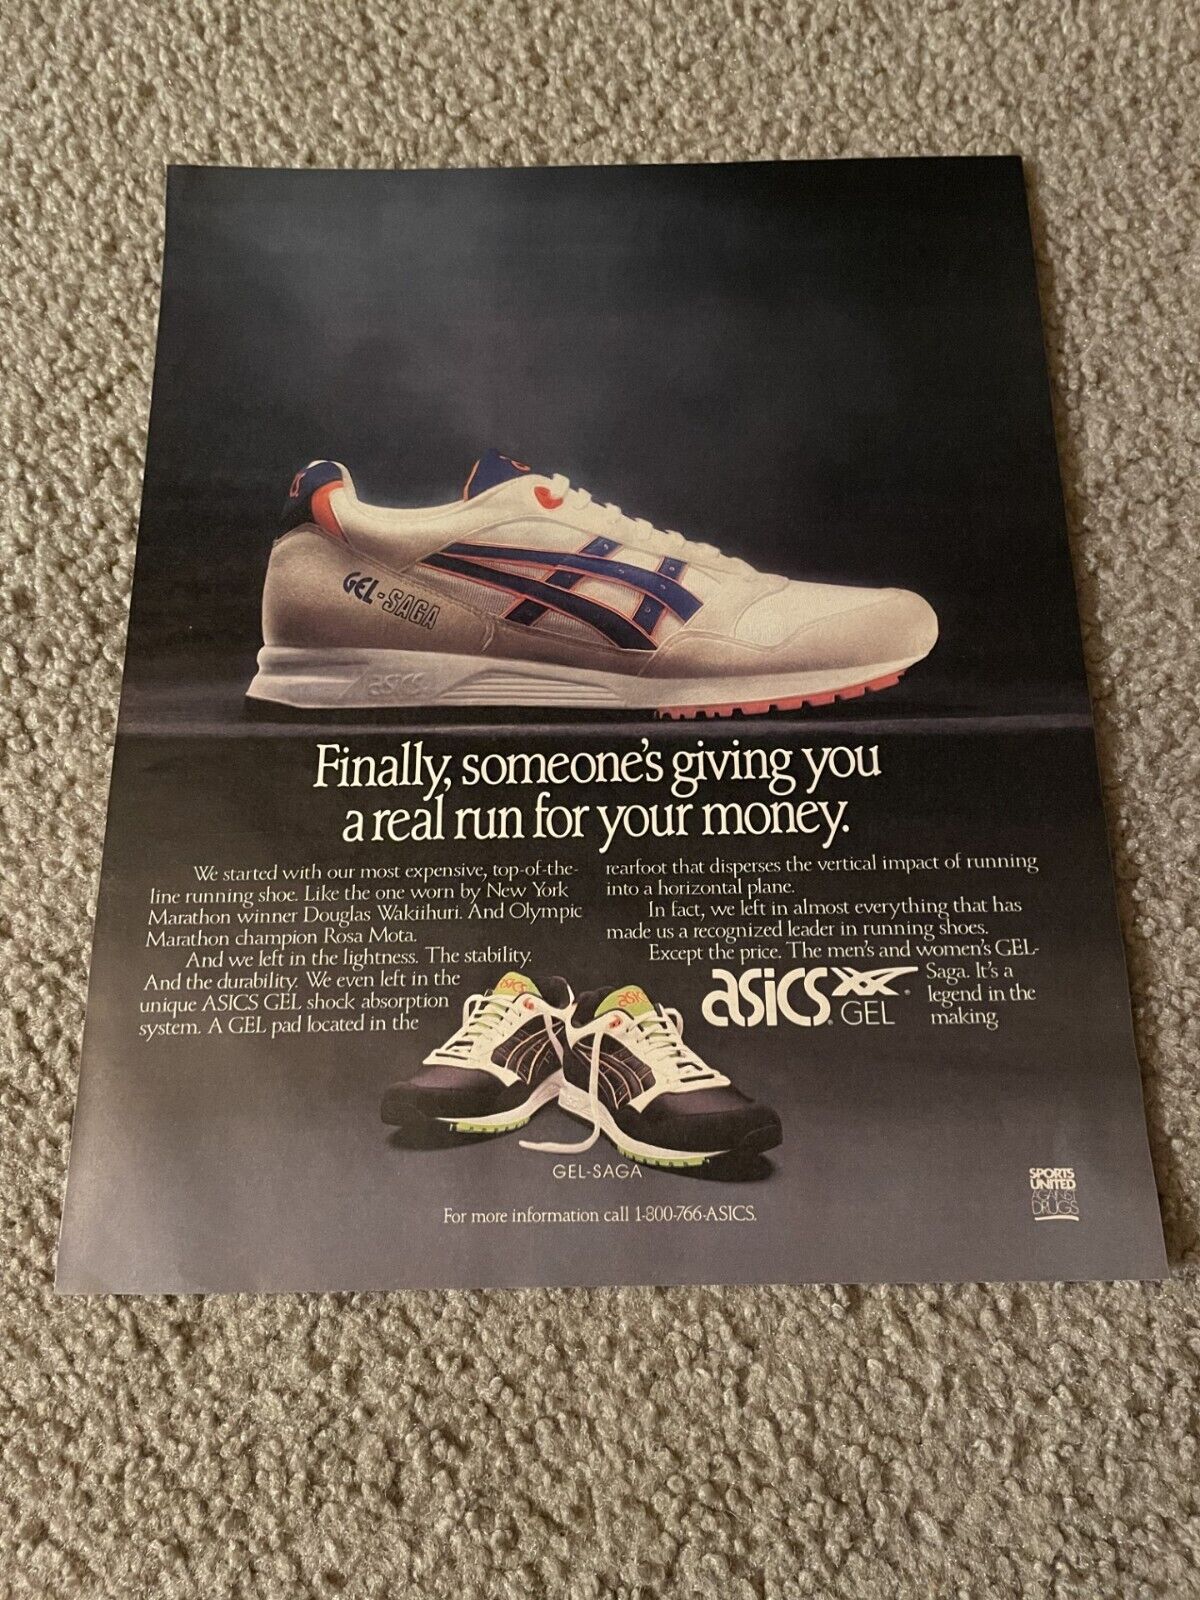 Vintage 1991 ASICS GEL-SAGA Running Shoes Poster Print Ad 1990s